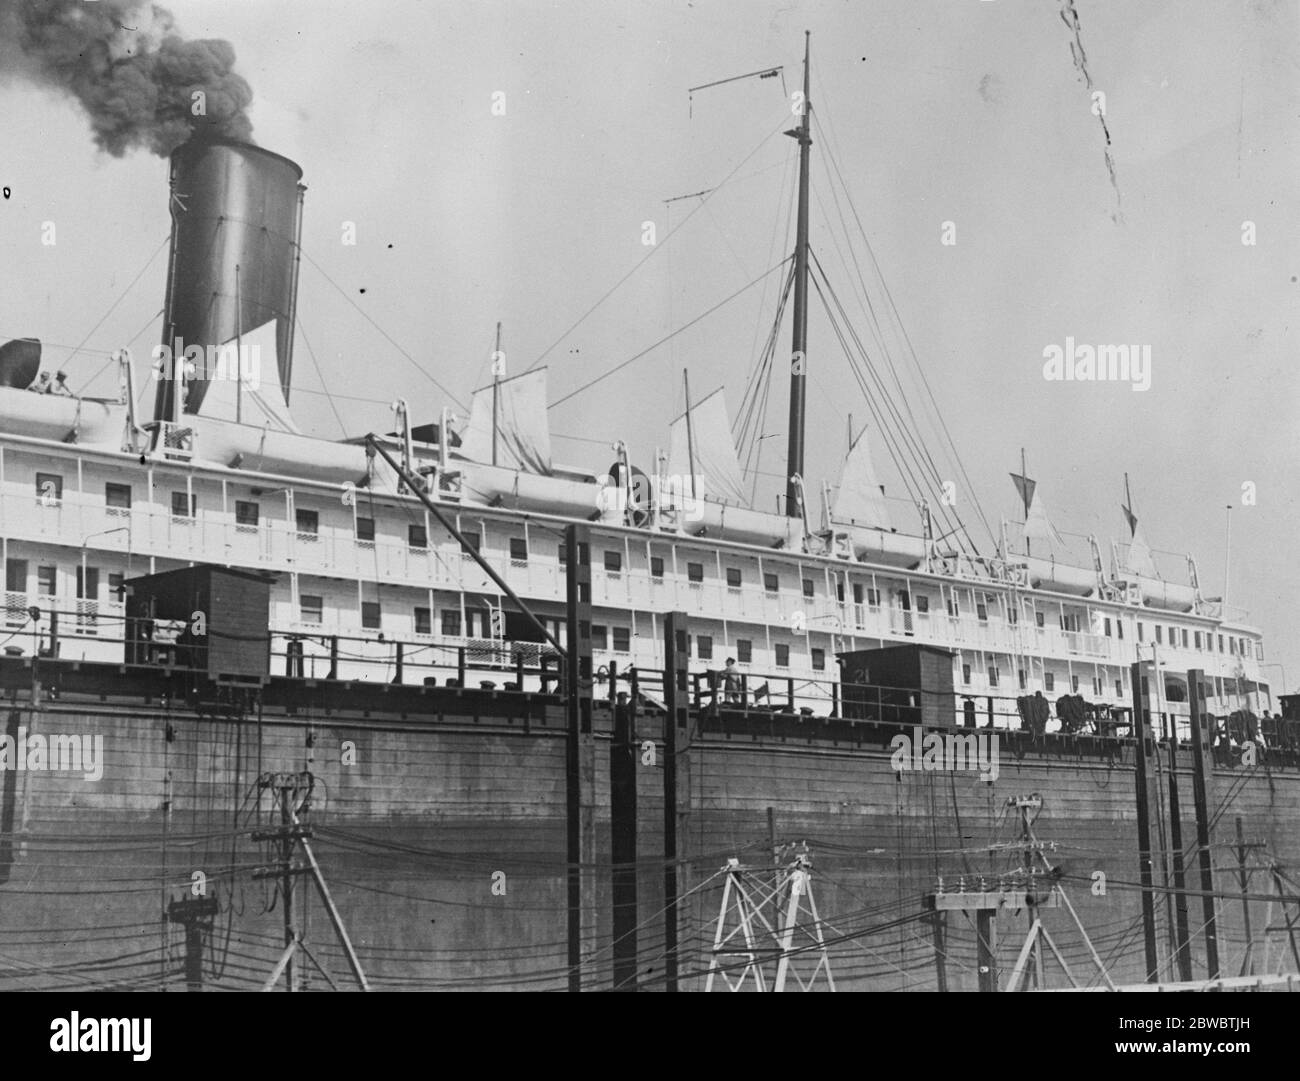 Neues Segellife Boot gibt Liner ein queeres Aussehen EIN Deck Blick auf den Pazifik-Liner Harvard jetzt im Trockendock in Los Angeles , wo sie mit Segel-Rettungsboote ausgestattet wird 12 Februar 1926 Stockfoto